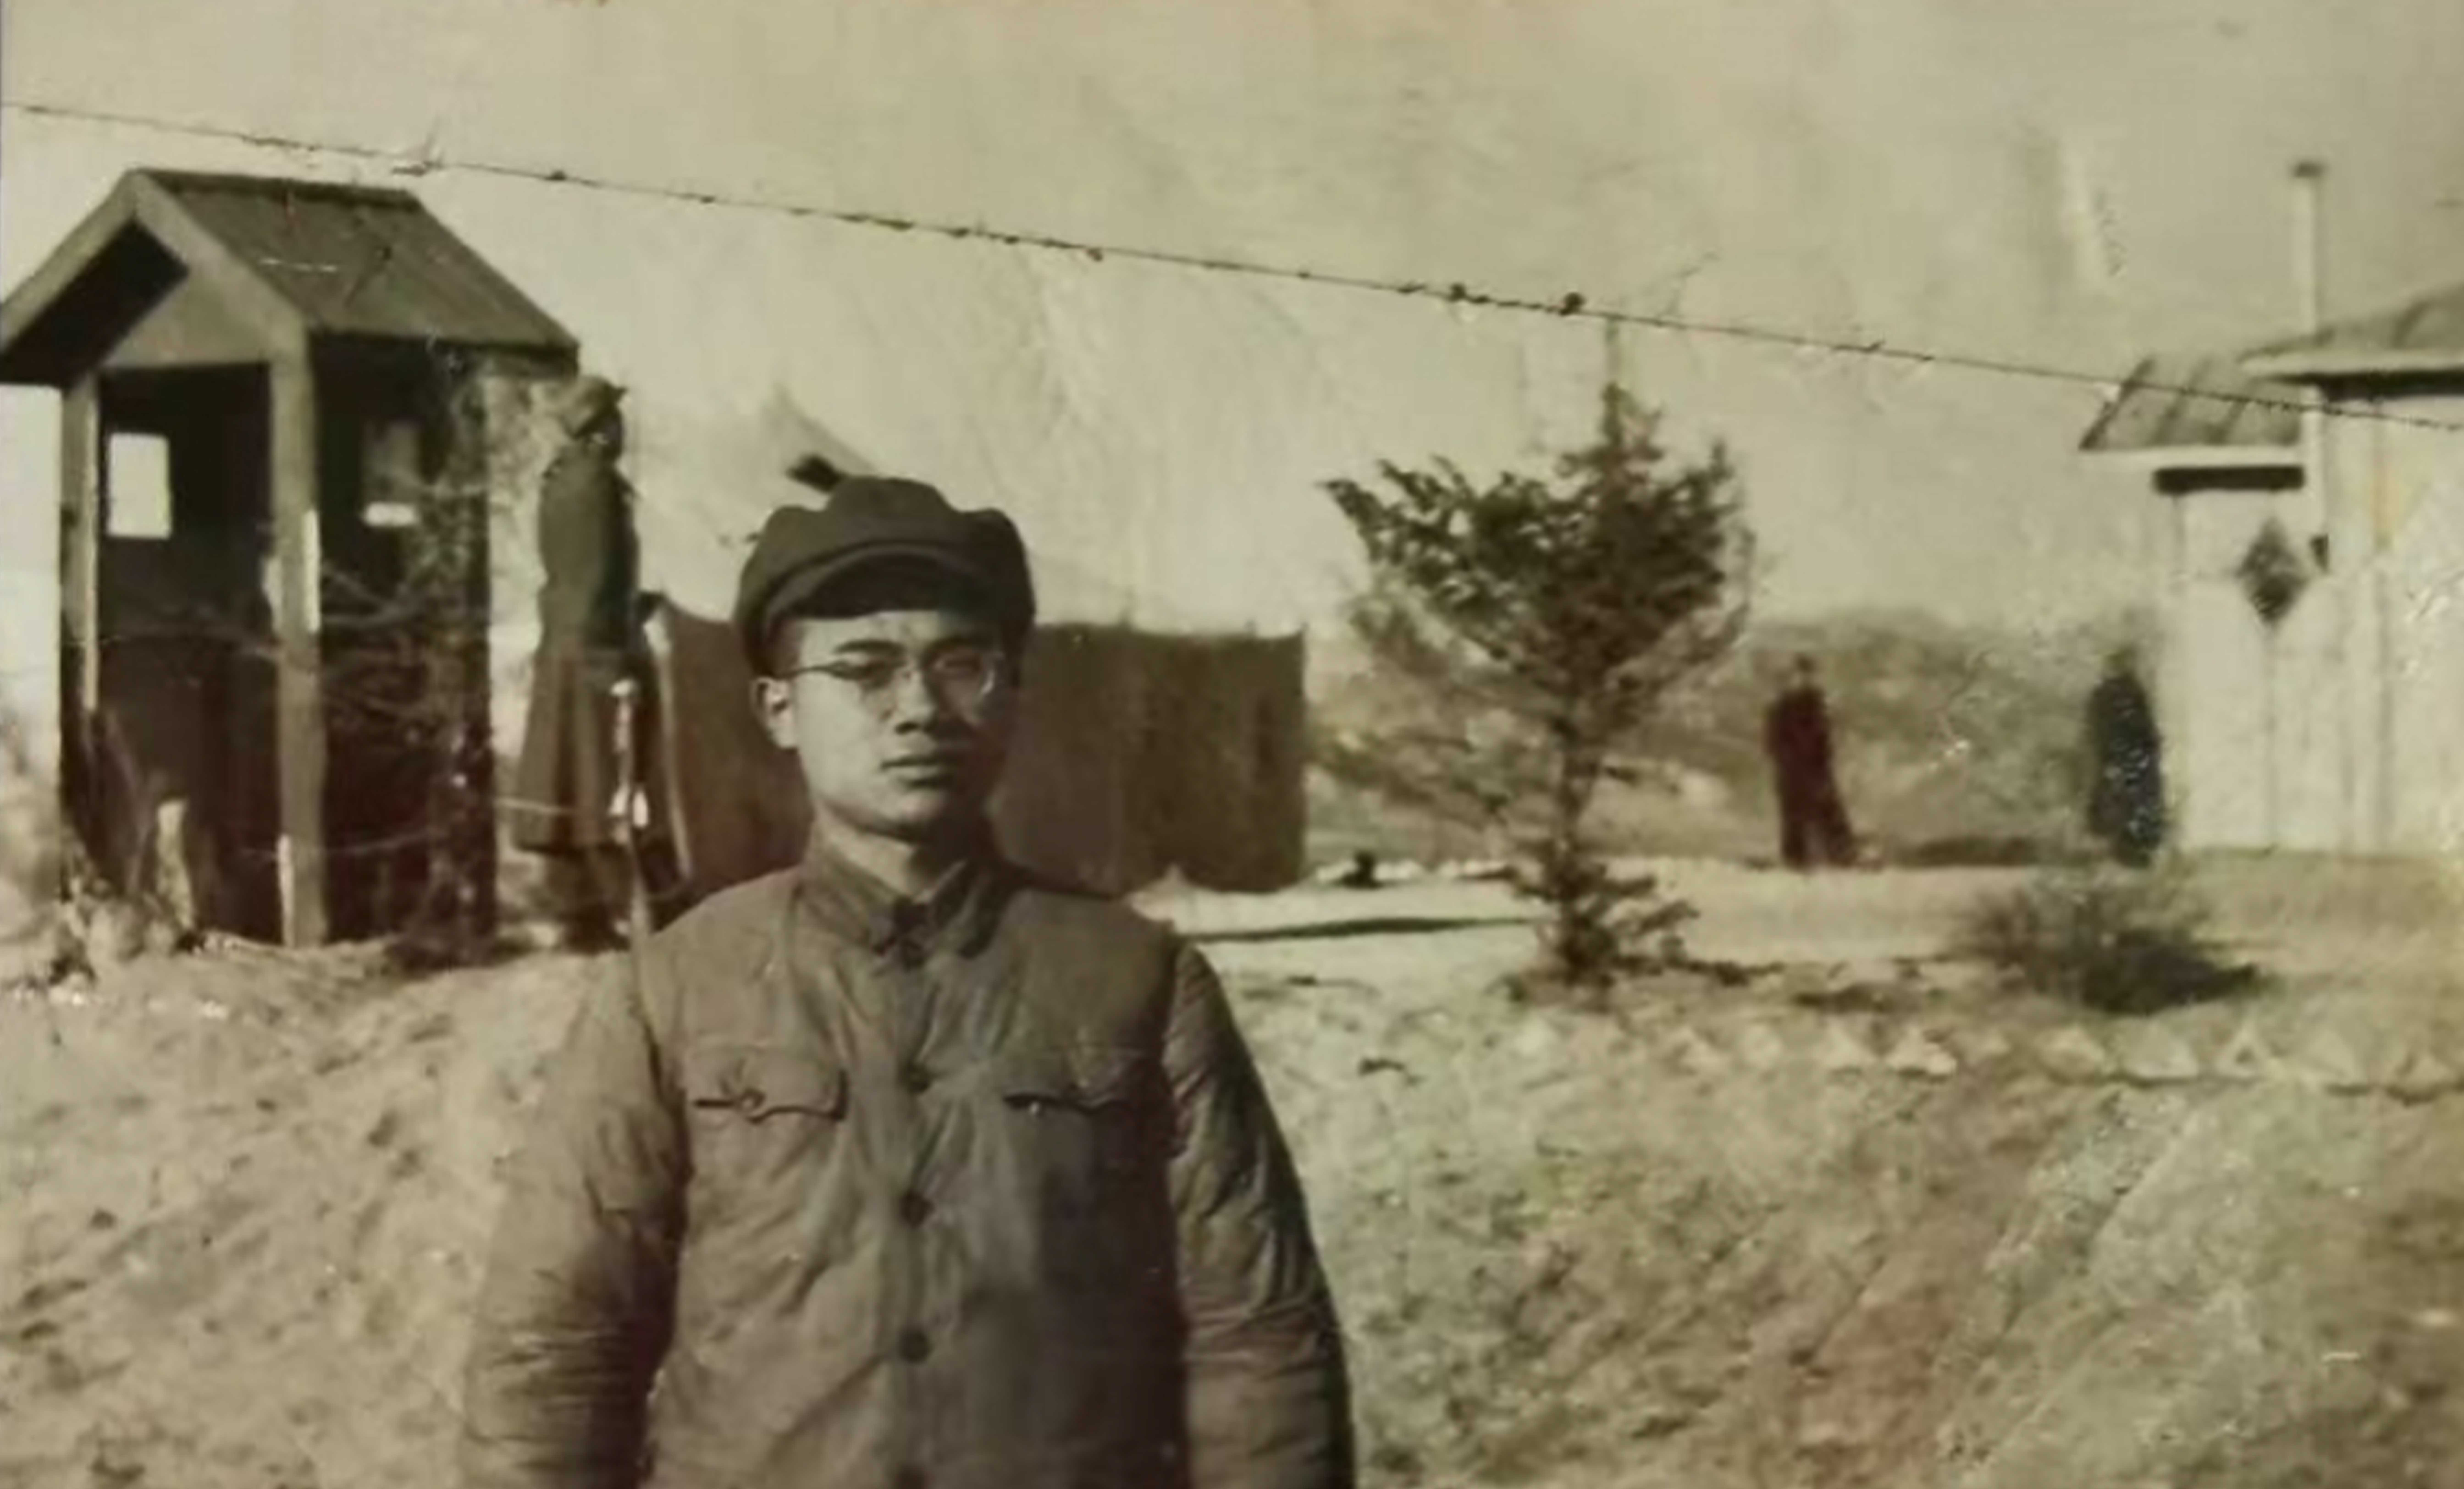 【人物】英雄歸來，想念你們！廣東潮安籍老兵回憶70年前志願軍往事